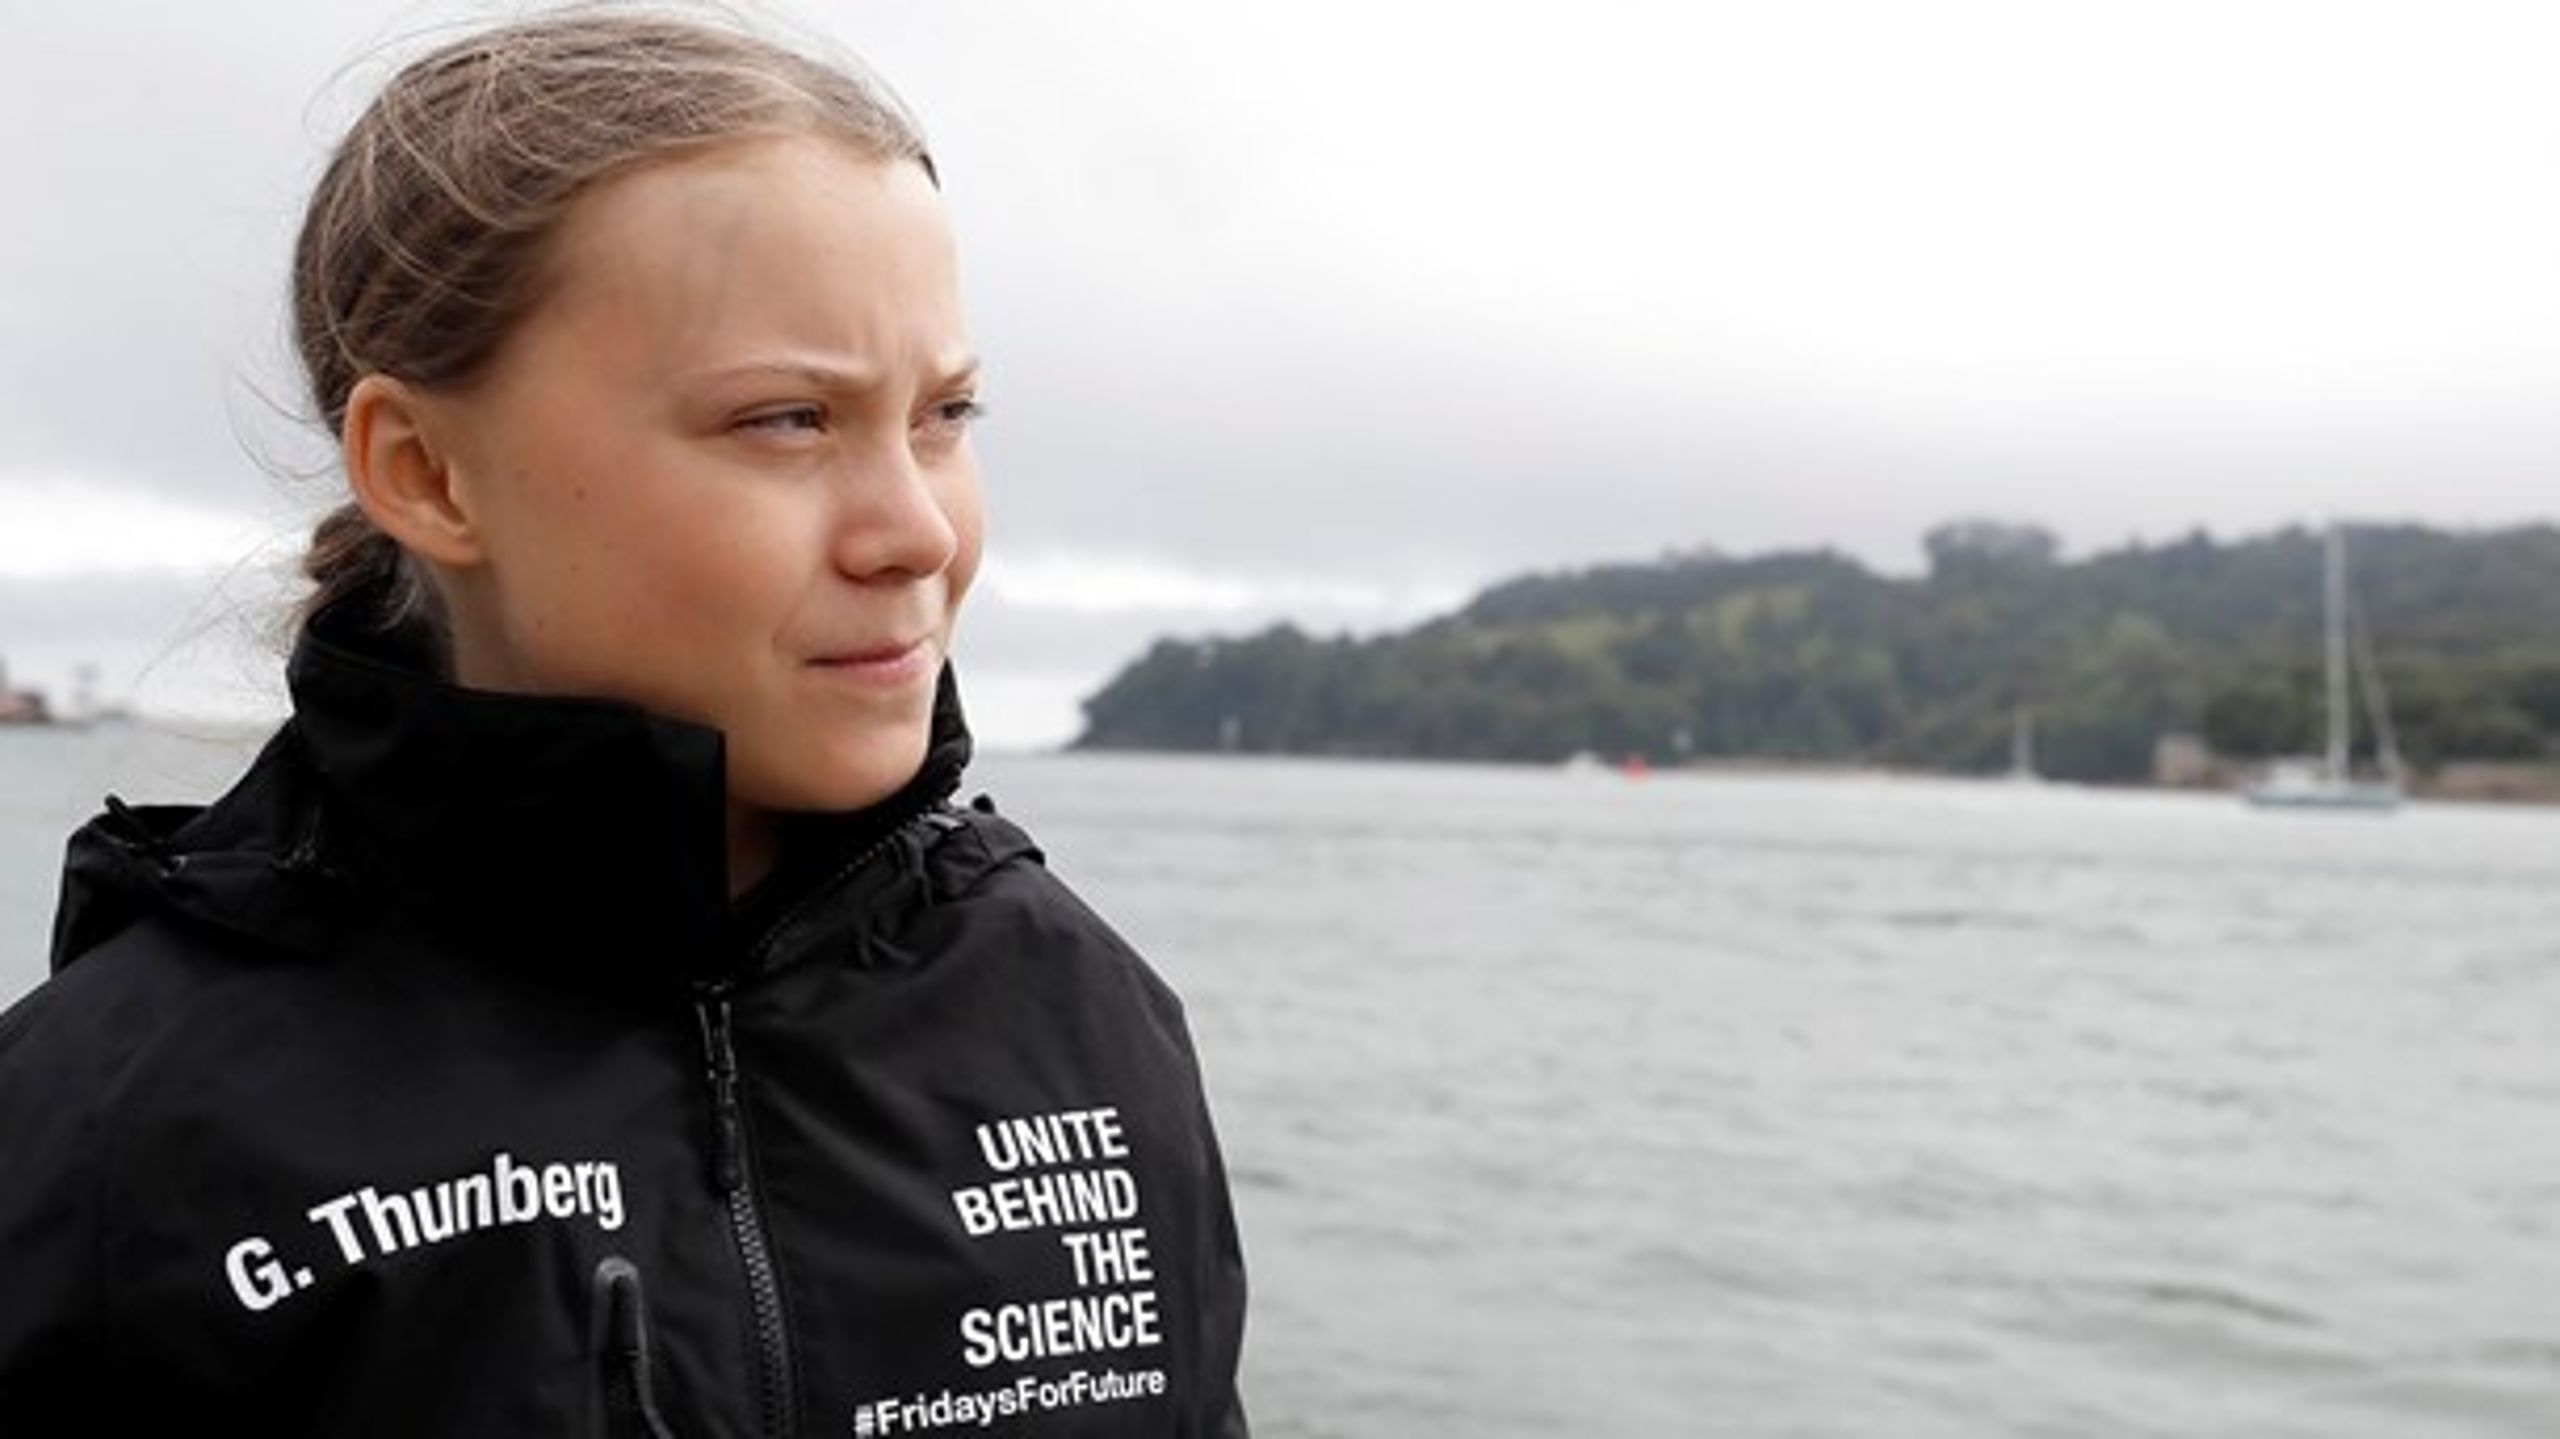 Voksenverdenen kan godt leve op til sit ansvar uden at blive belært af en ung, som stadig bor hjemme hos mor og far, skriver Adam Holm om klimaaktivisten Greta Thunberg.